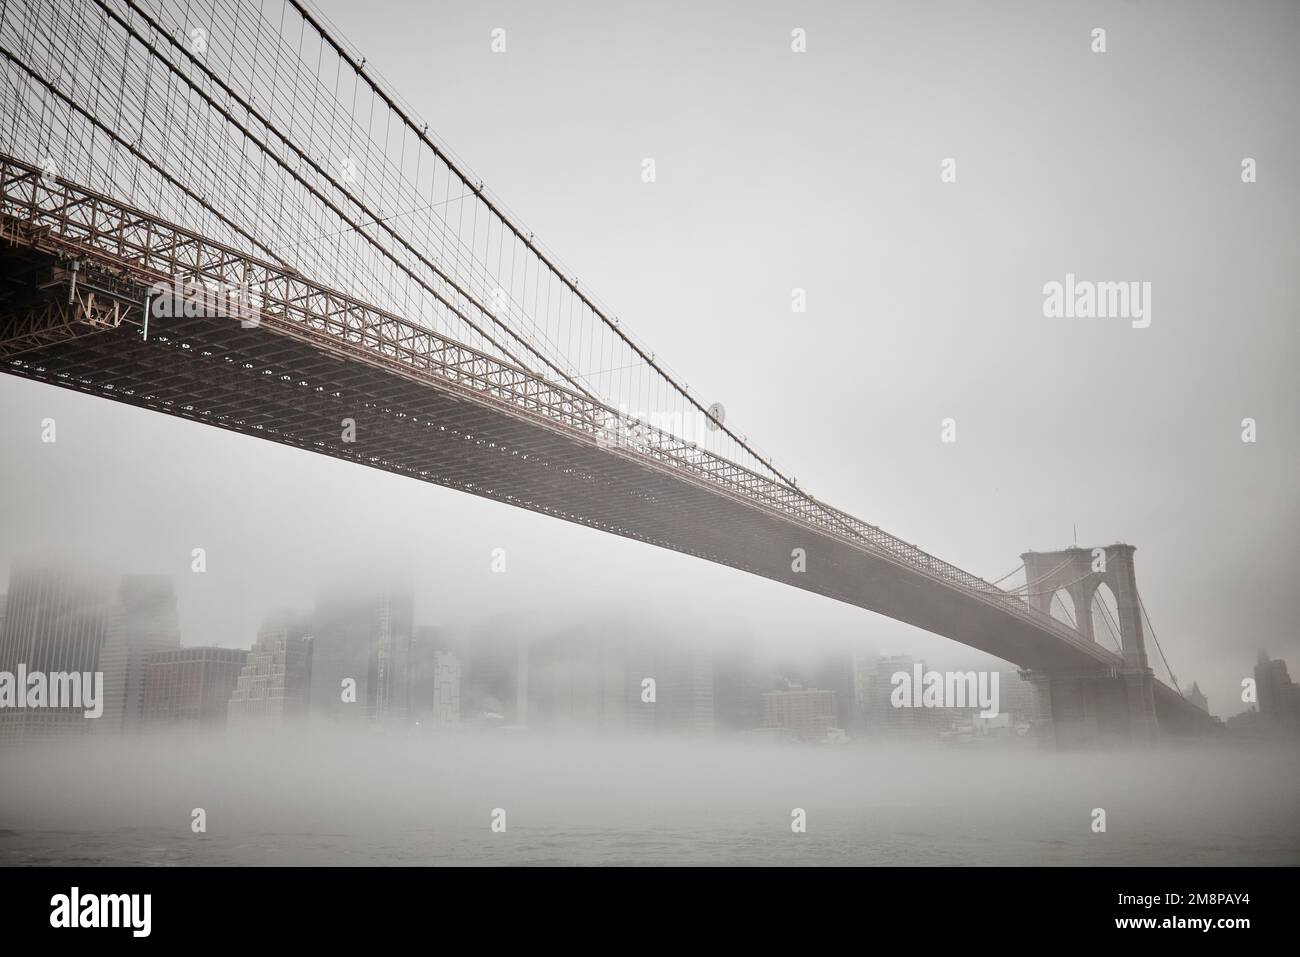 La ciudad de Nueva York Brooklyn Dumbo área con el emblemático puente de Brooklyn en la niebla que oculta el icónico horizonte Foto de stock